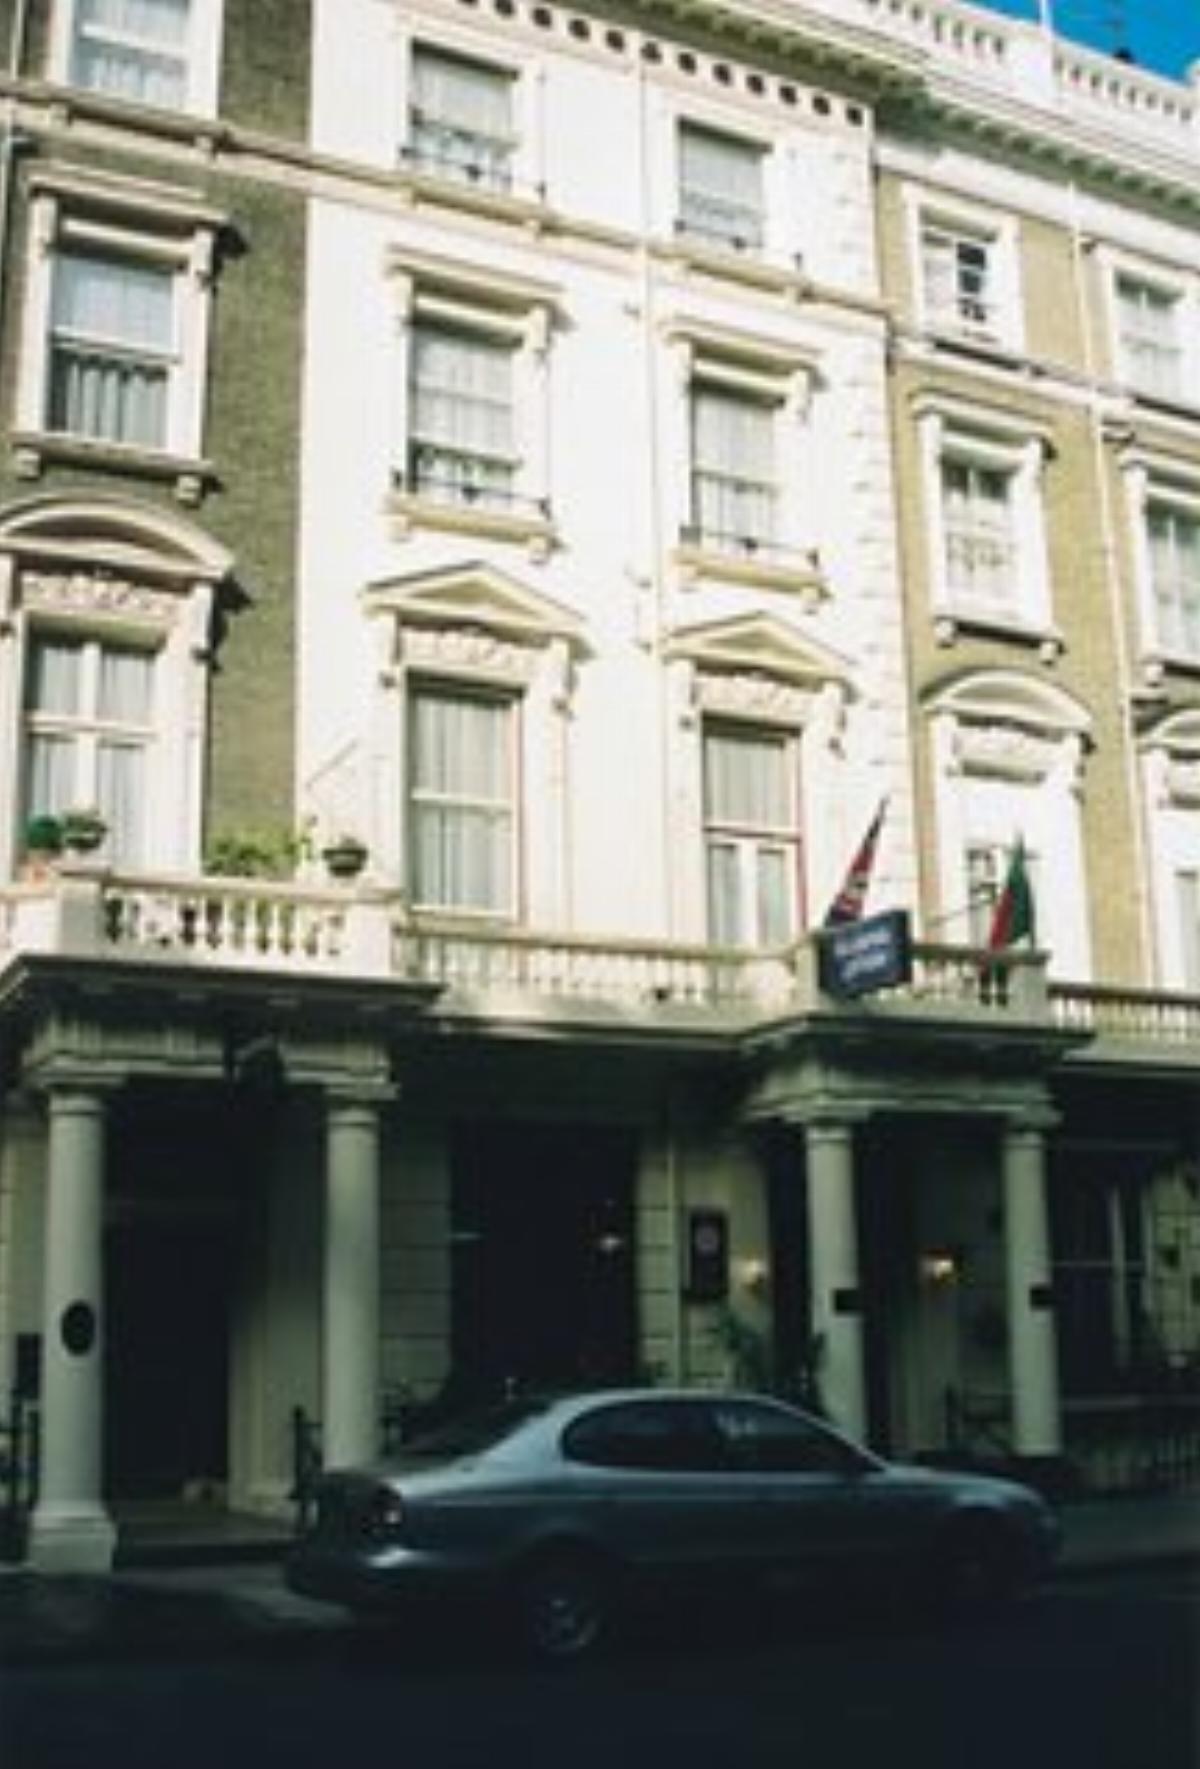 Apollo Hotel Hotel London United Kingdom